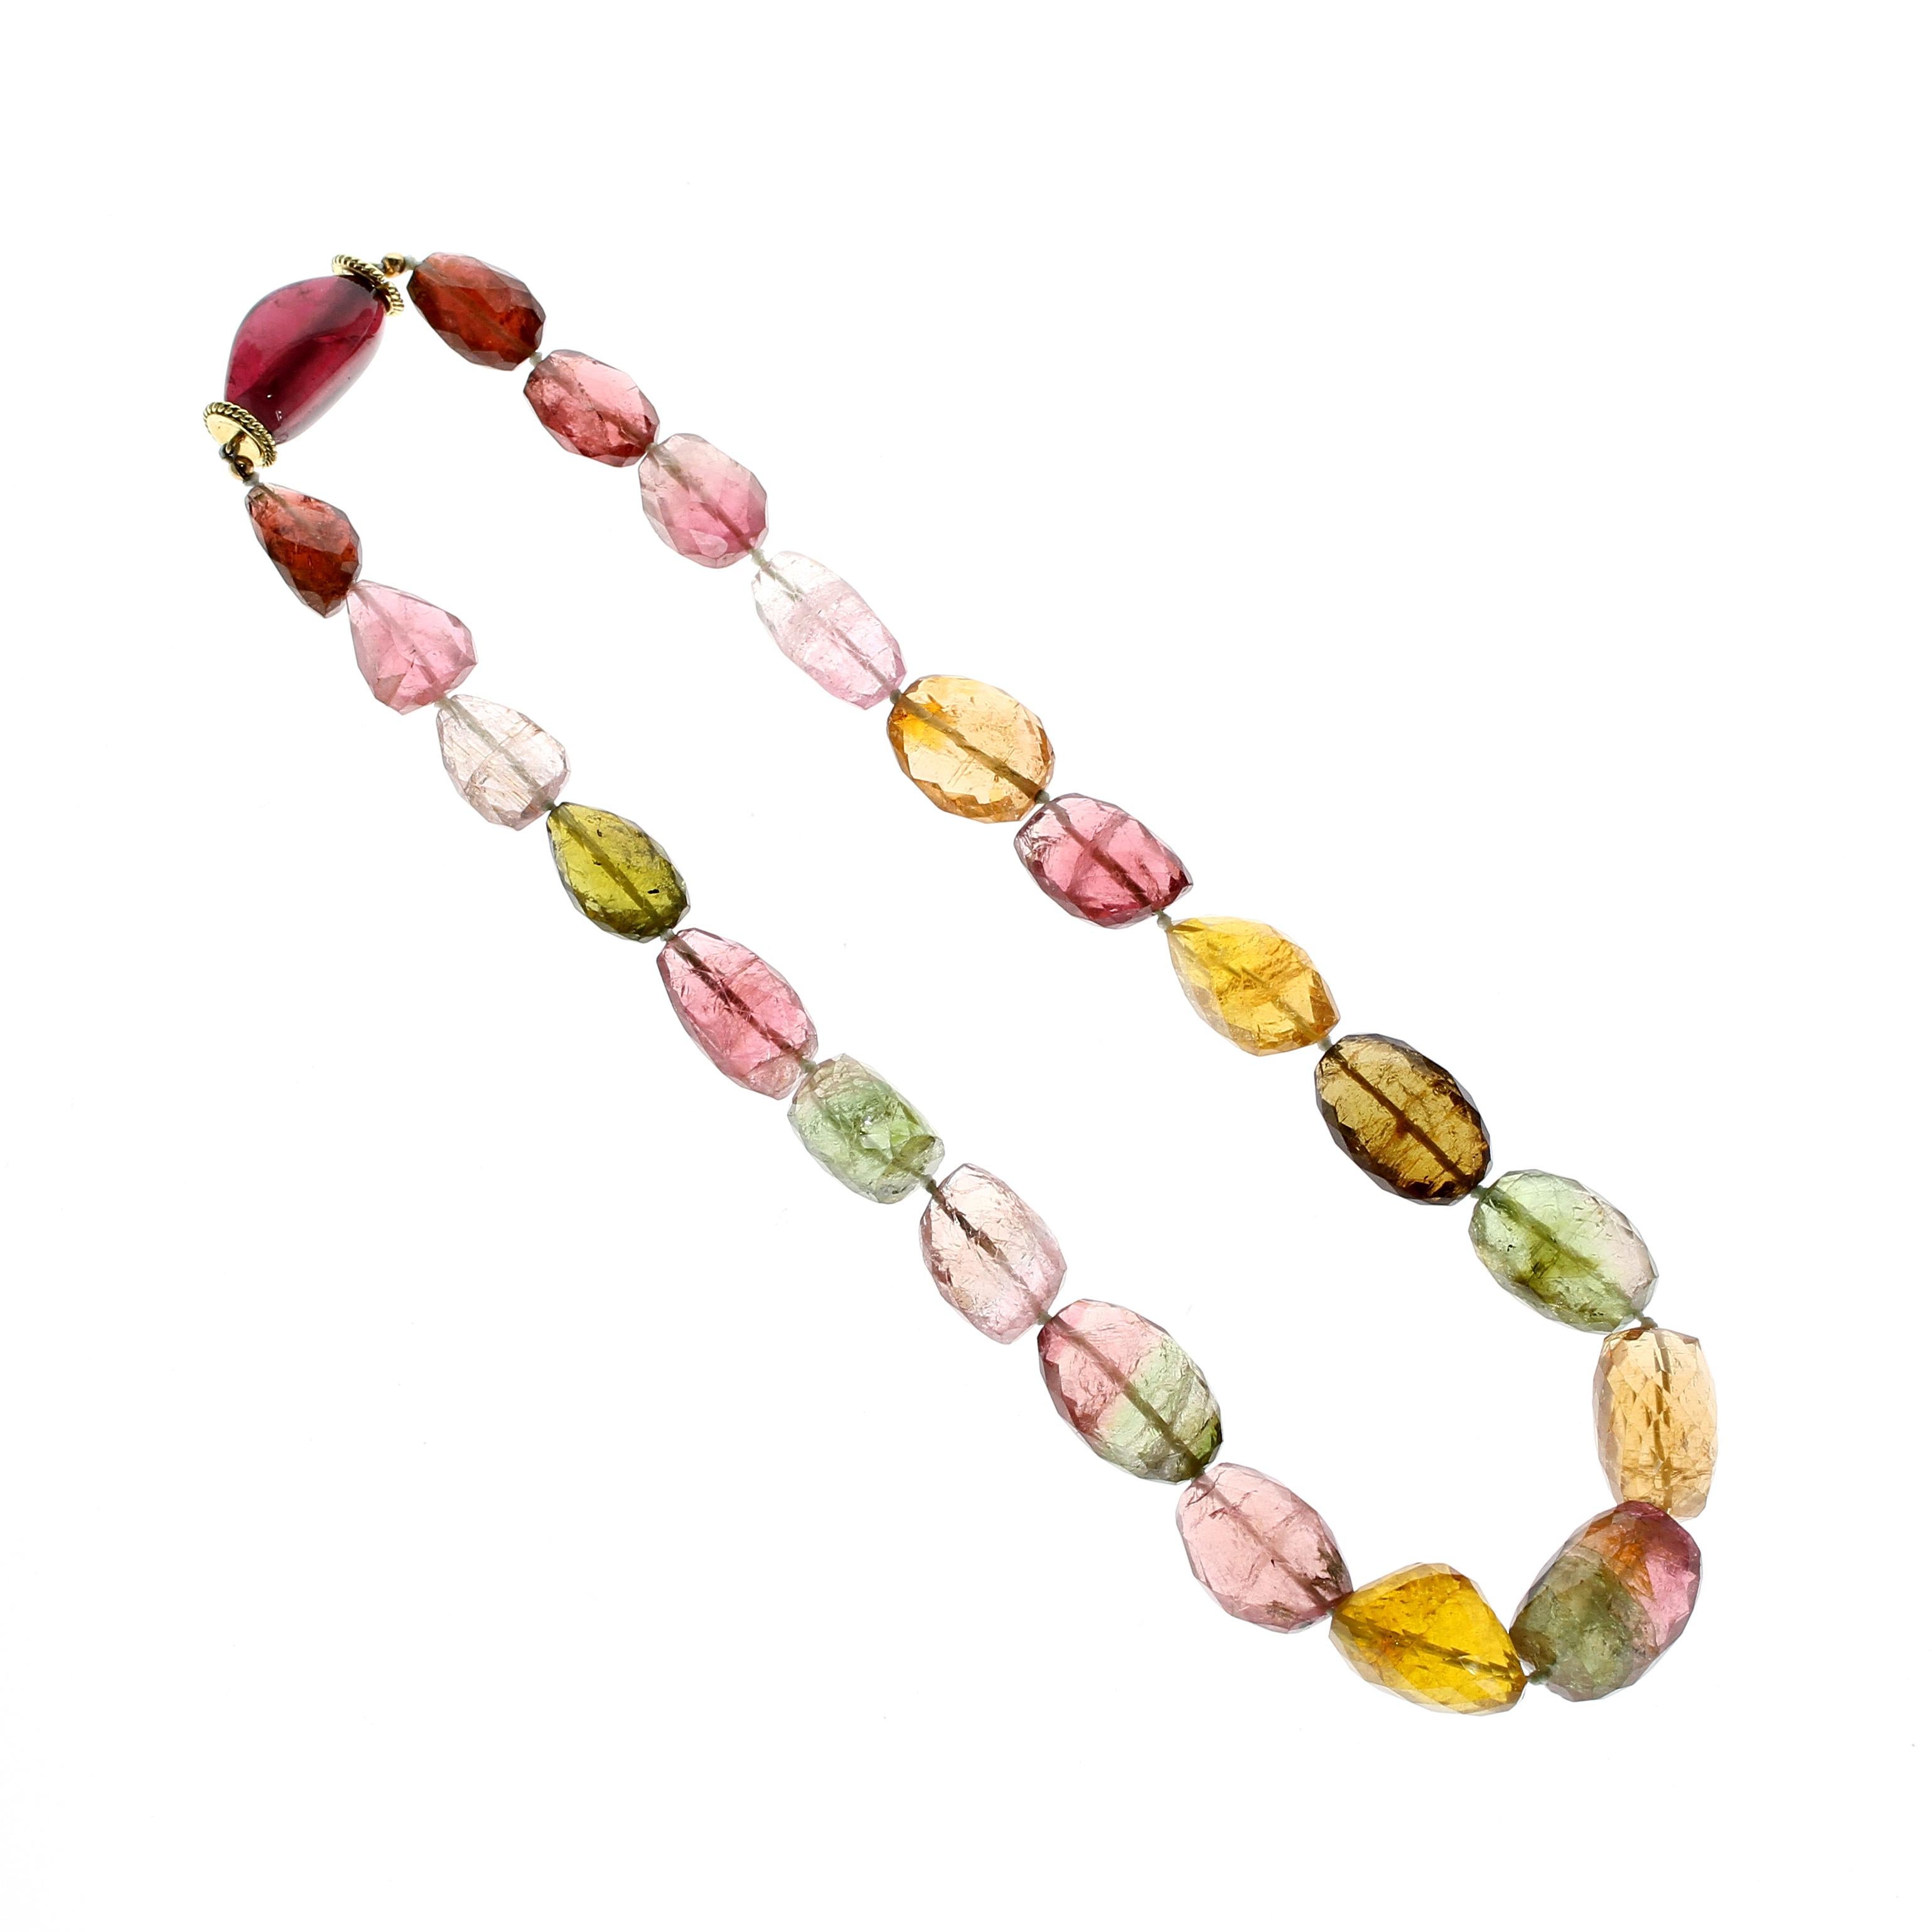 Eine einzigartige und farbenfrohe Edelsteinkette mit verschiedenen natürlichen Farben und organischen Formen des Turmalins, eingefasst in einen einfachen und leicht zu bedienenden Verschluss aus 18kt Gelbgold. Die einsträngige Halskette besteht aus